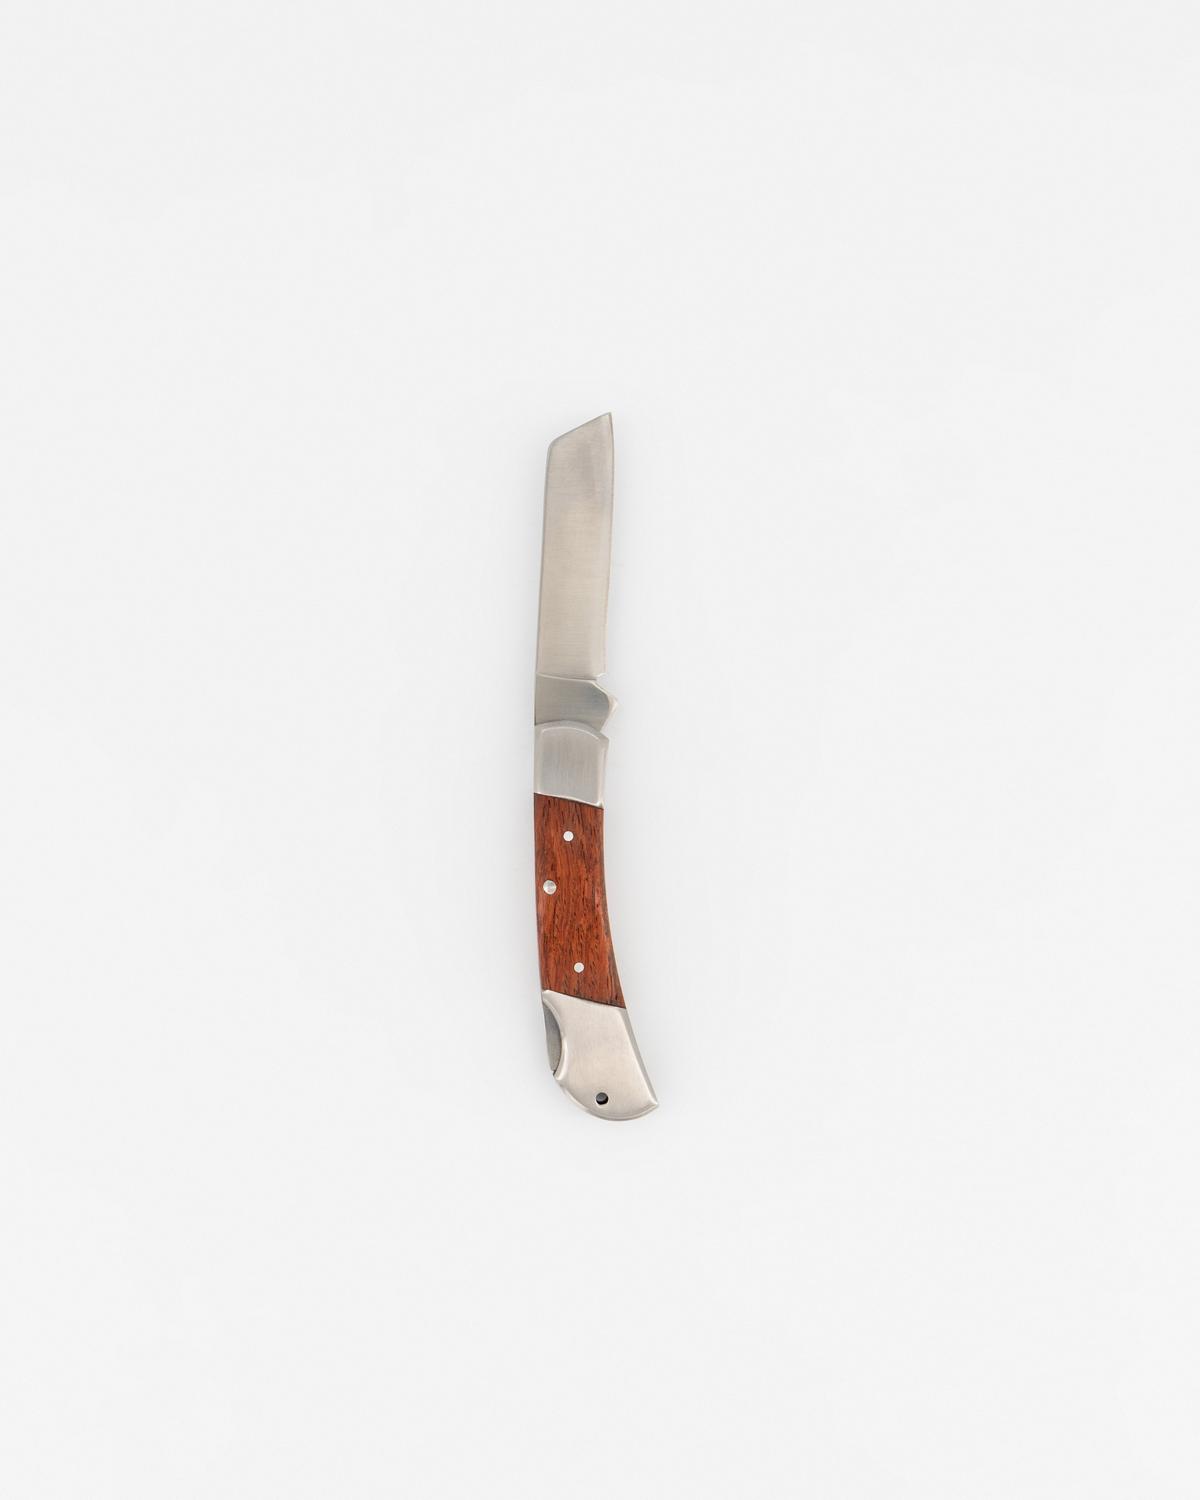 Kaliber Steenbok Folding Knife -  Brown